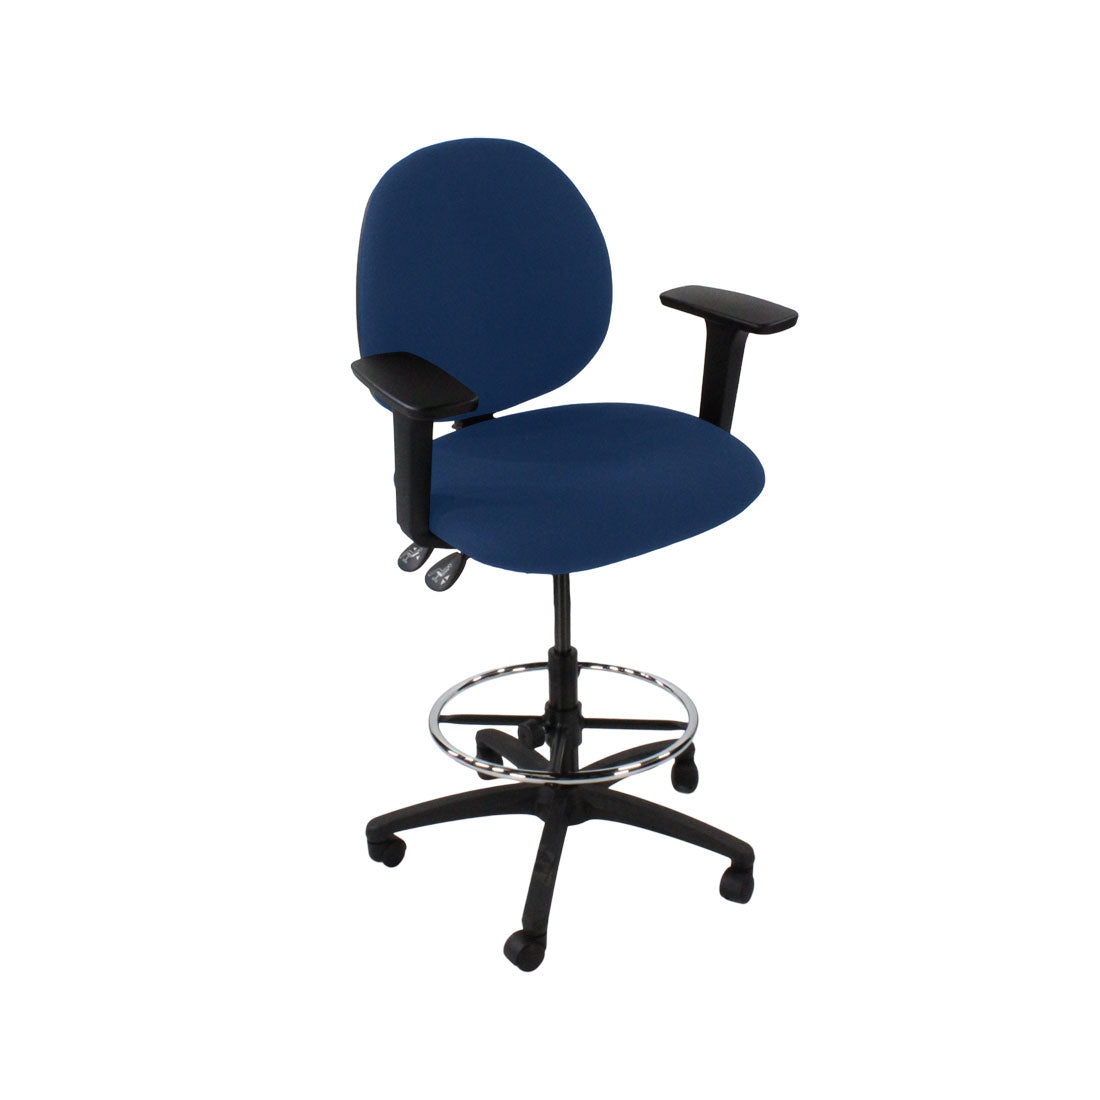 Inhaltsverzeichnis: Scoop Draftsman Chair aus blauem Stoff – generalüberholt